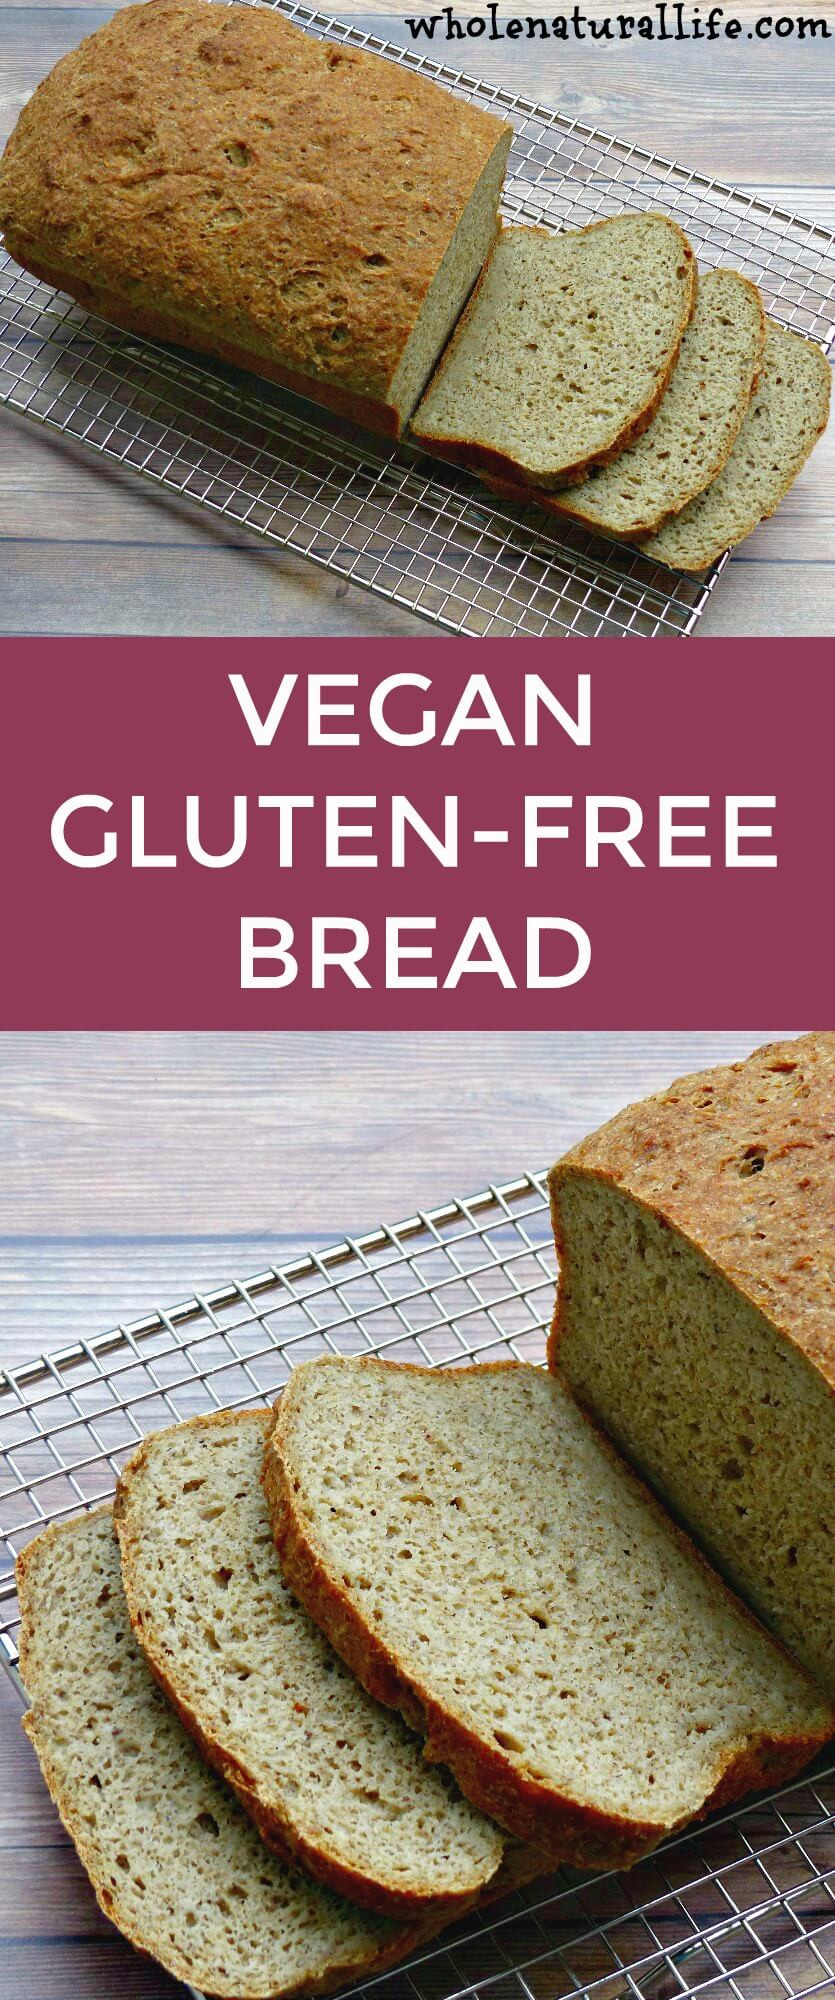 Vegan Gluten Free Bread
 Vegan Gluten free Bread Whole Natural Life